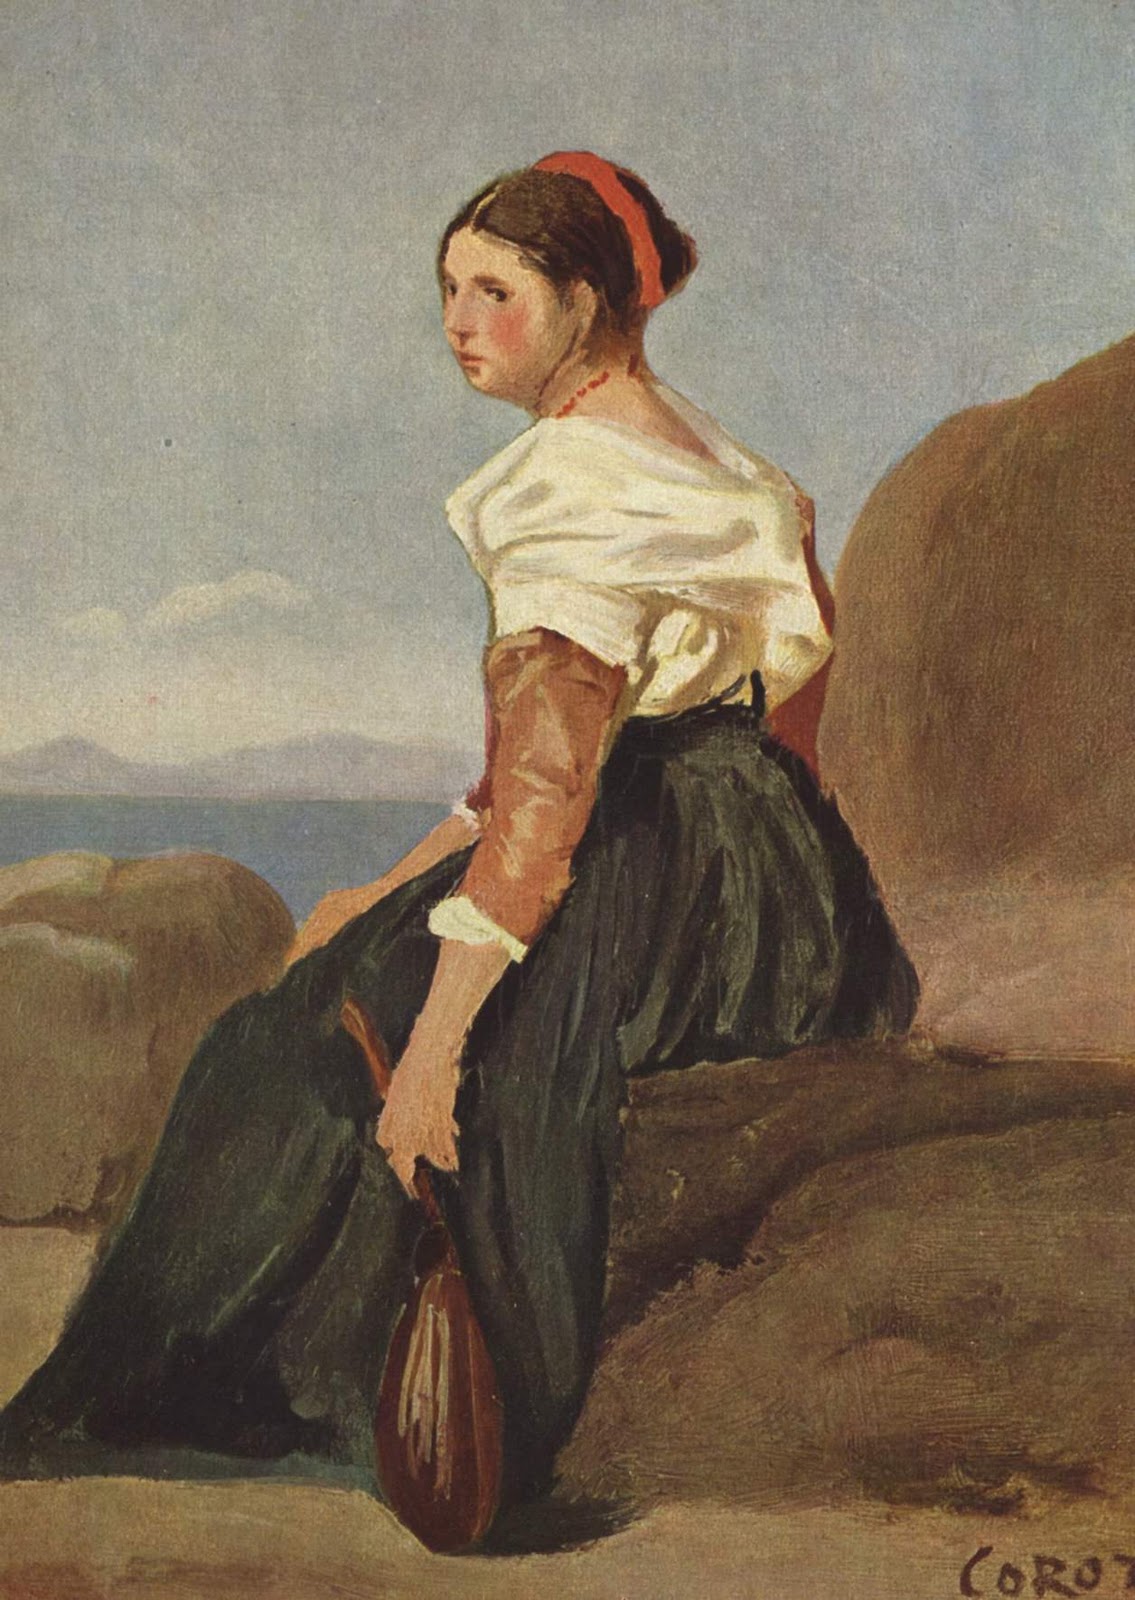 Jean+Baptiste+Camille+Corot-1796-1875 (231).jpg